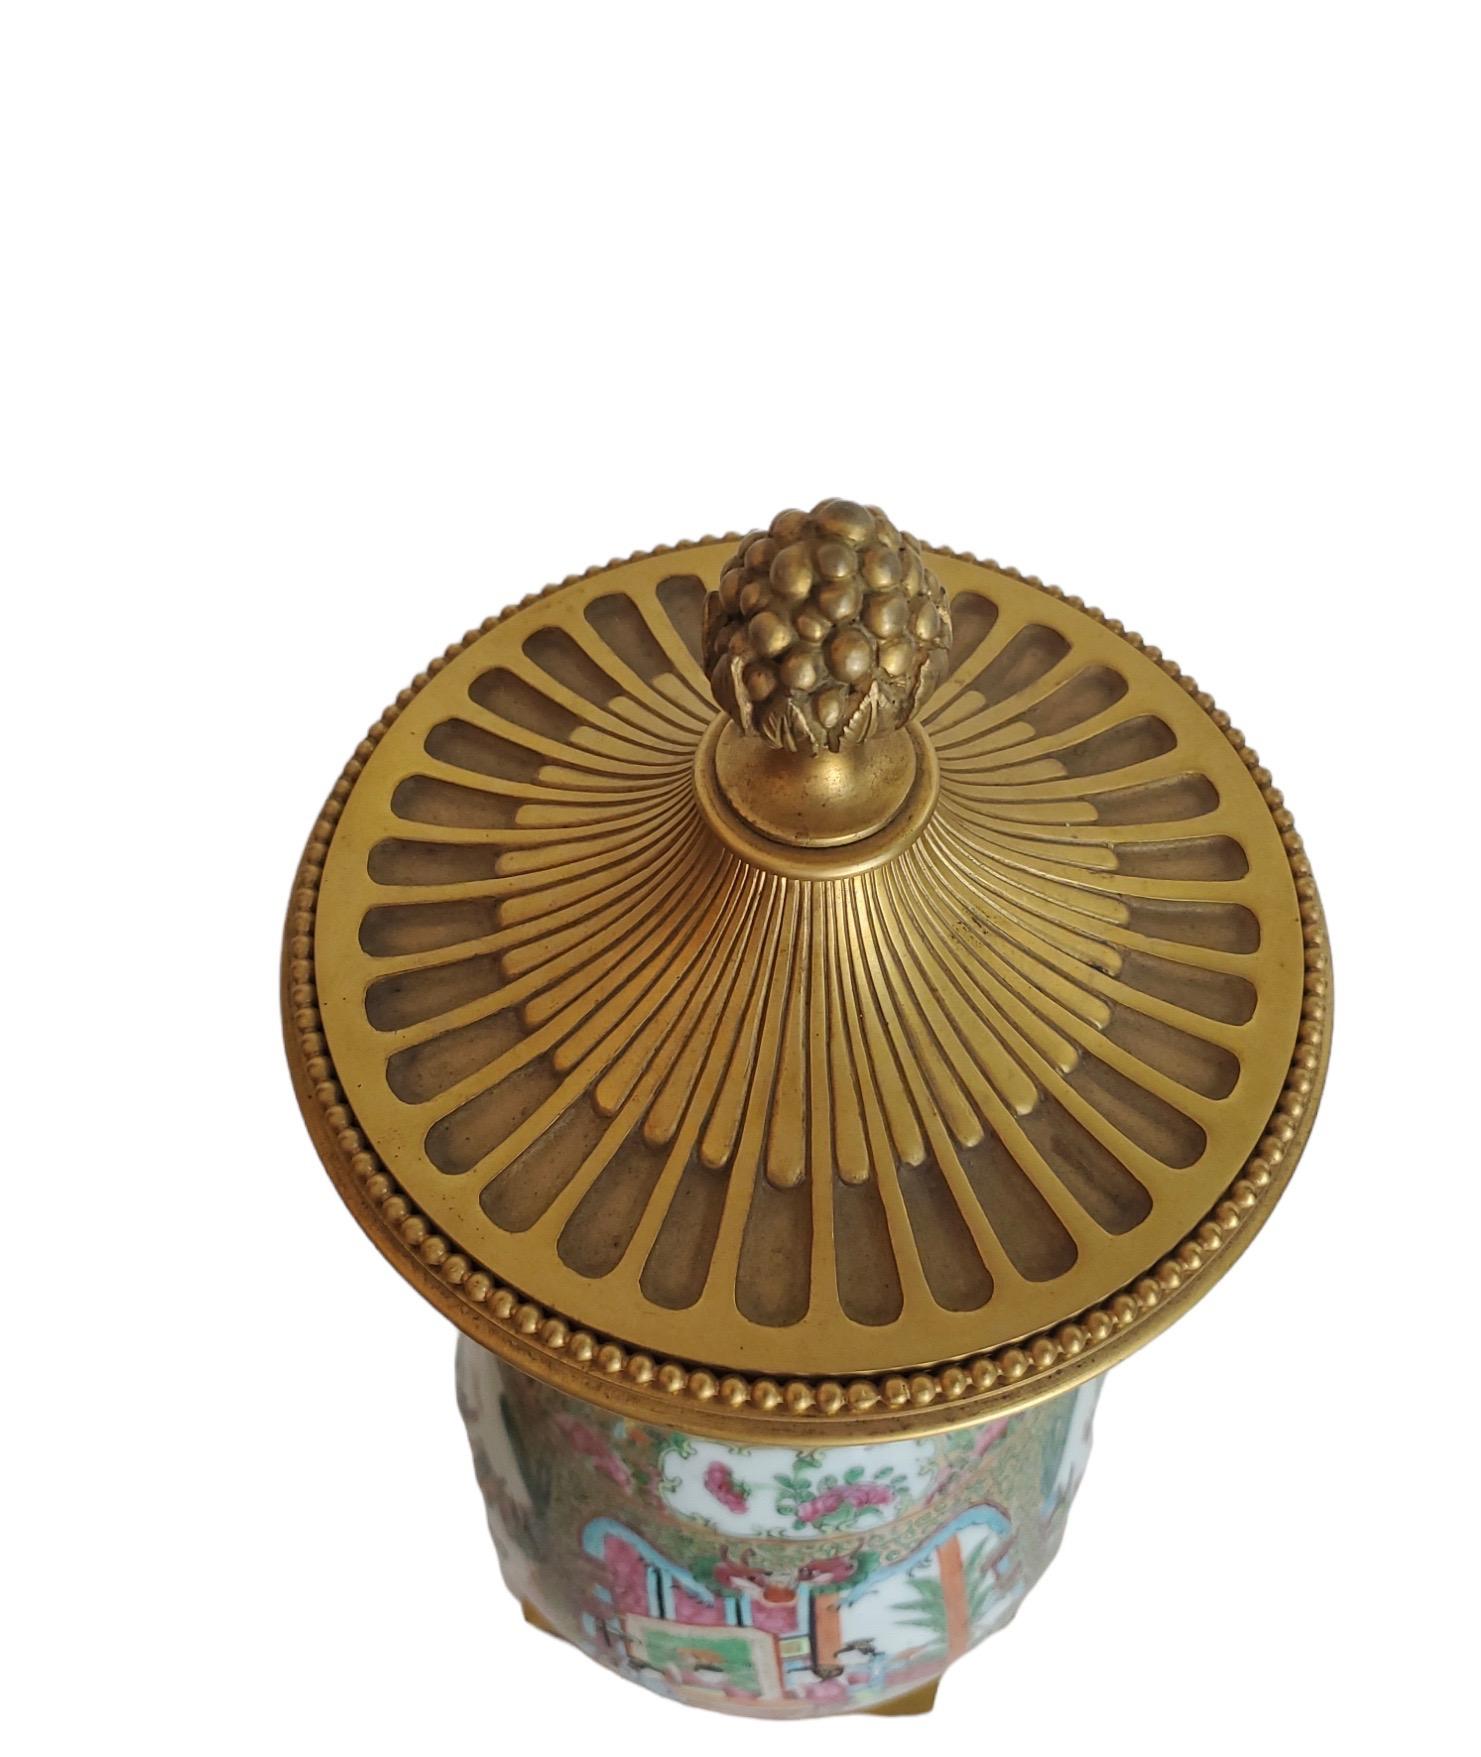 mit Rosenmedaillons bedeckte Urnen aus dem 19. Jahrhundert mit wunderschön gegossenen französischen Beschlägen aus Goldbronze. In ausgezeichnetem Zustand. Die Deckel sind nicht abnehmbar.